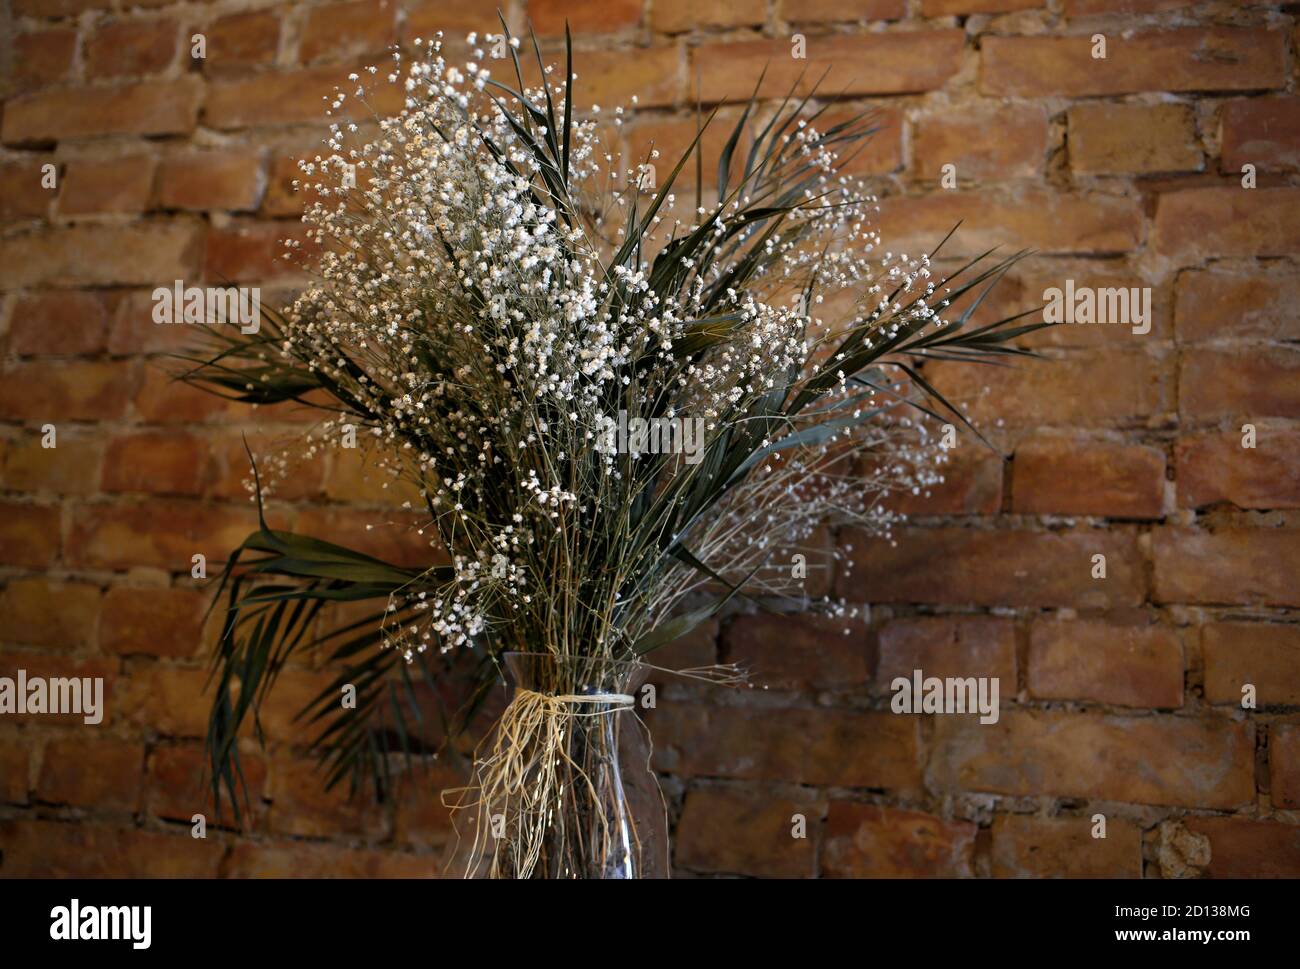 Vaso con piccoli fiori bianchi selvaggi sullo sfondo delle pareti di mattoni, caffetteria, caffetteria, ristorante in stile loft con decorazioni floreali naturali Foto Stock